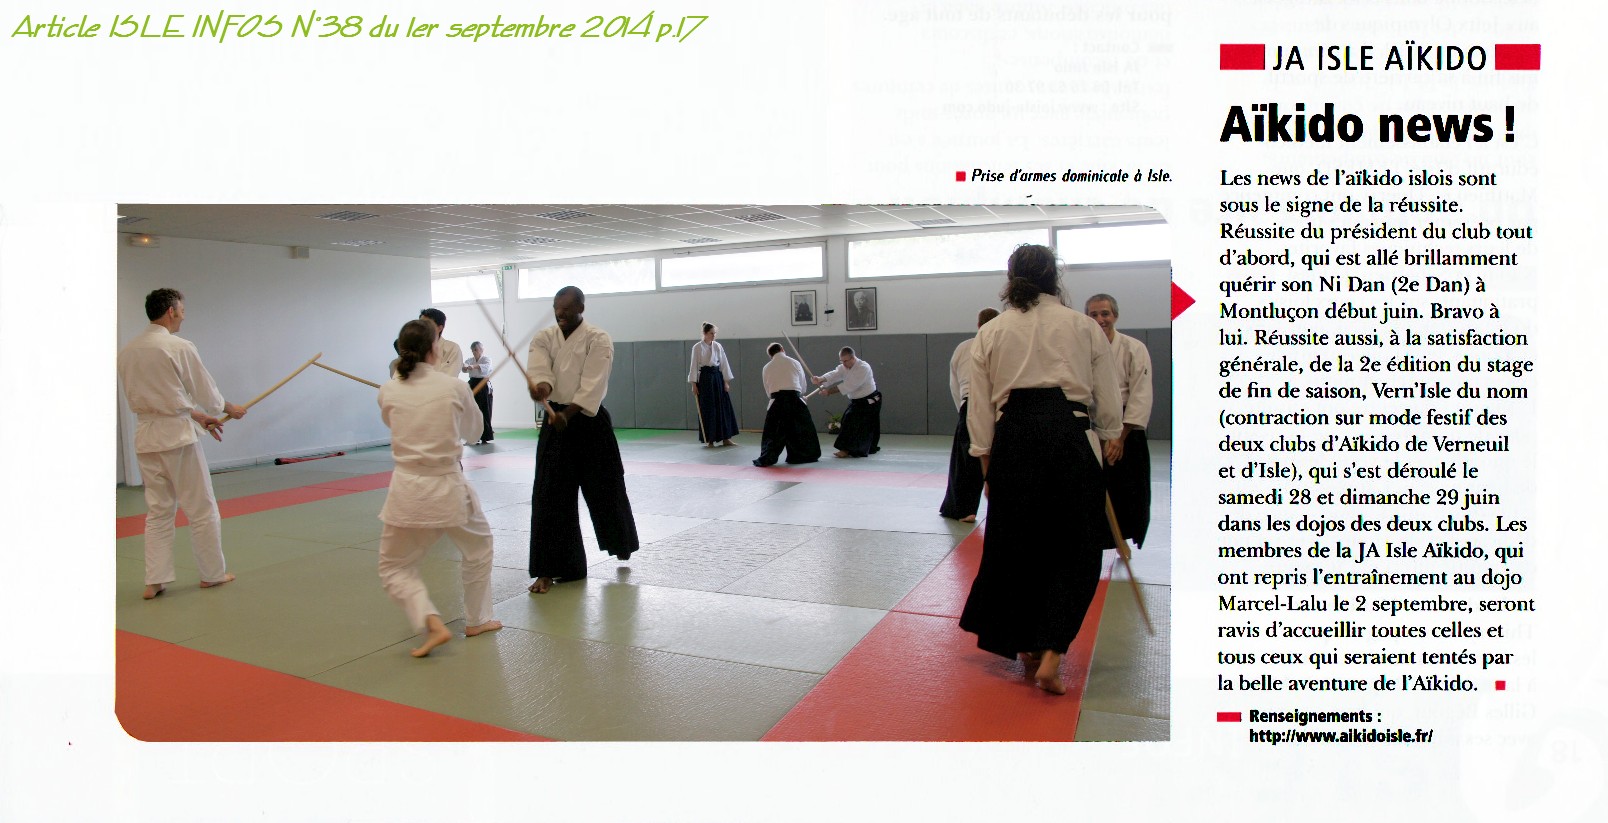 140901 Article ISLE INFOS N°38 Reprise saison d'Aikido.jpg - 292,25 kB